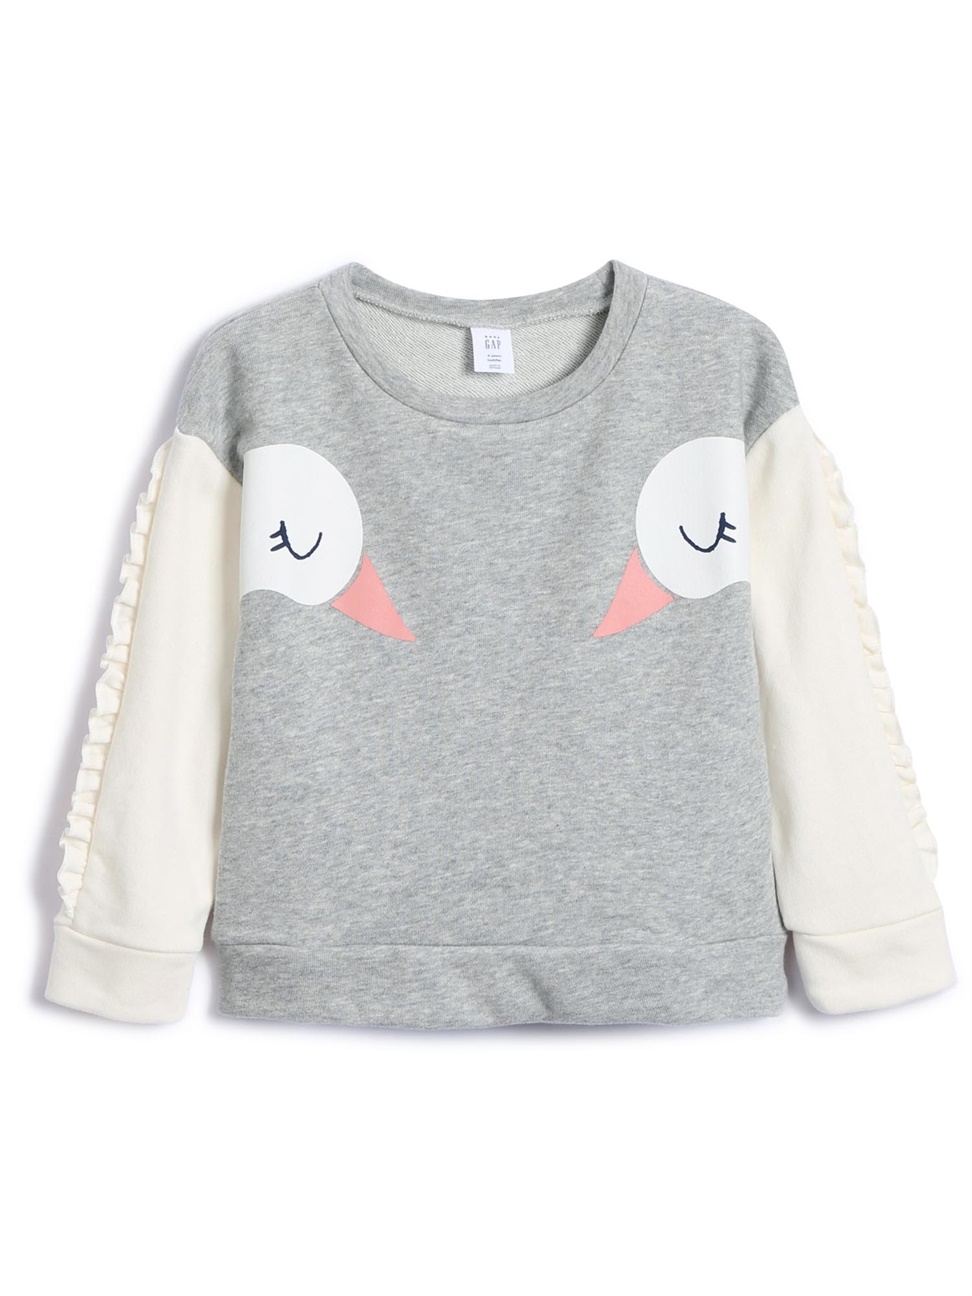 女幼童裝|童趣動物造型圓領上衣-灰色天鵝印花